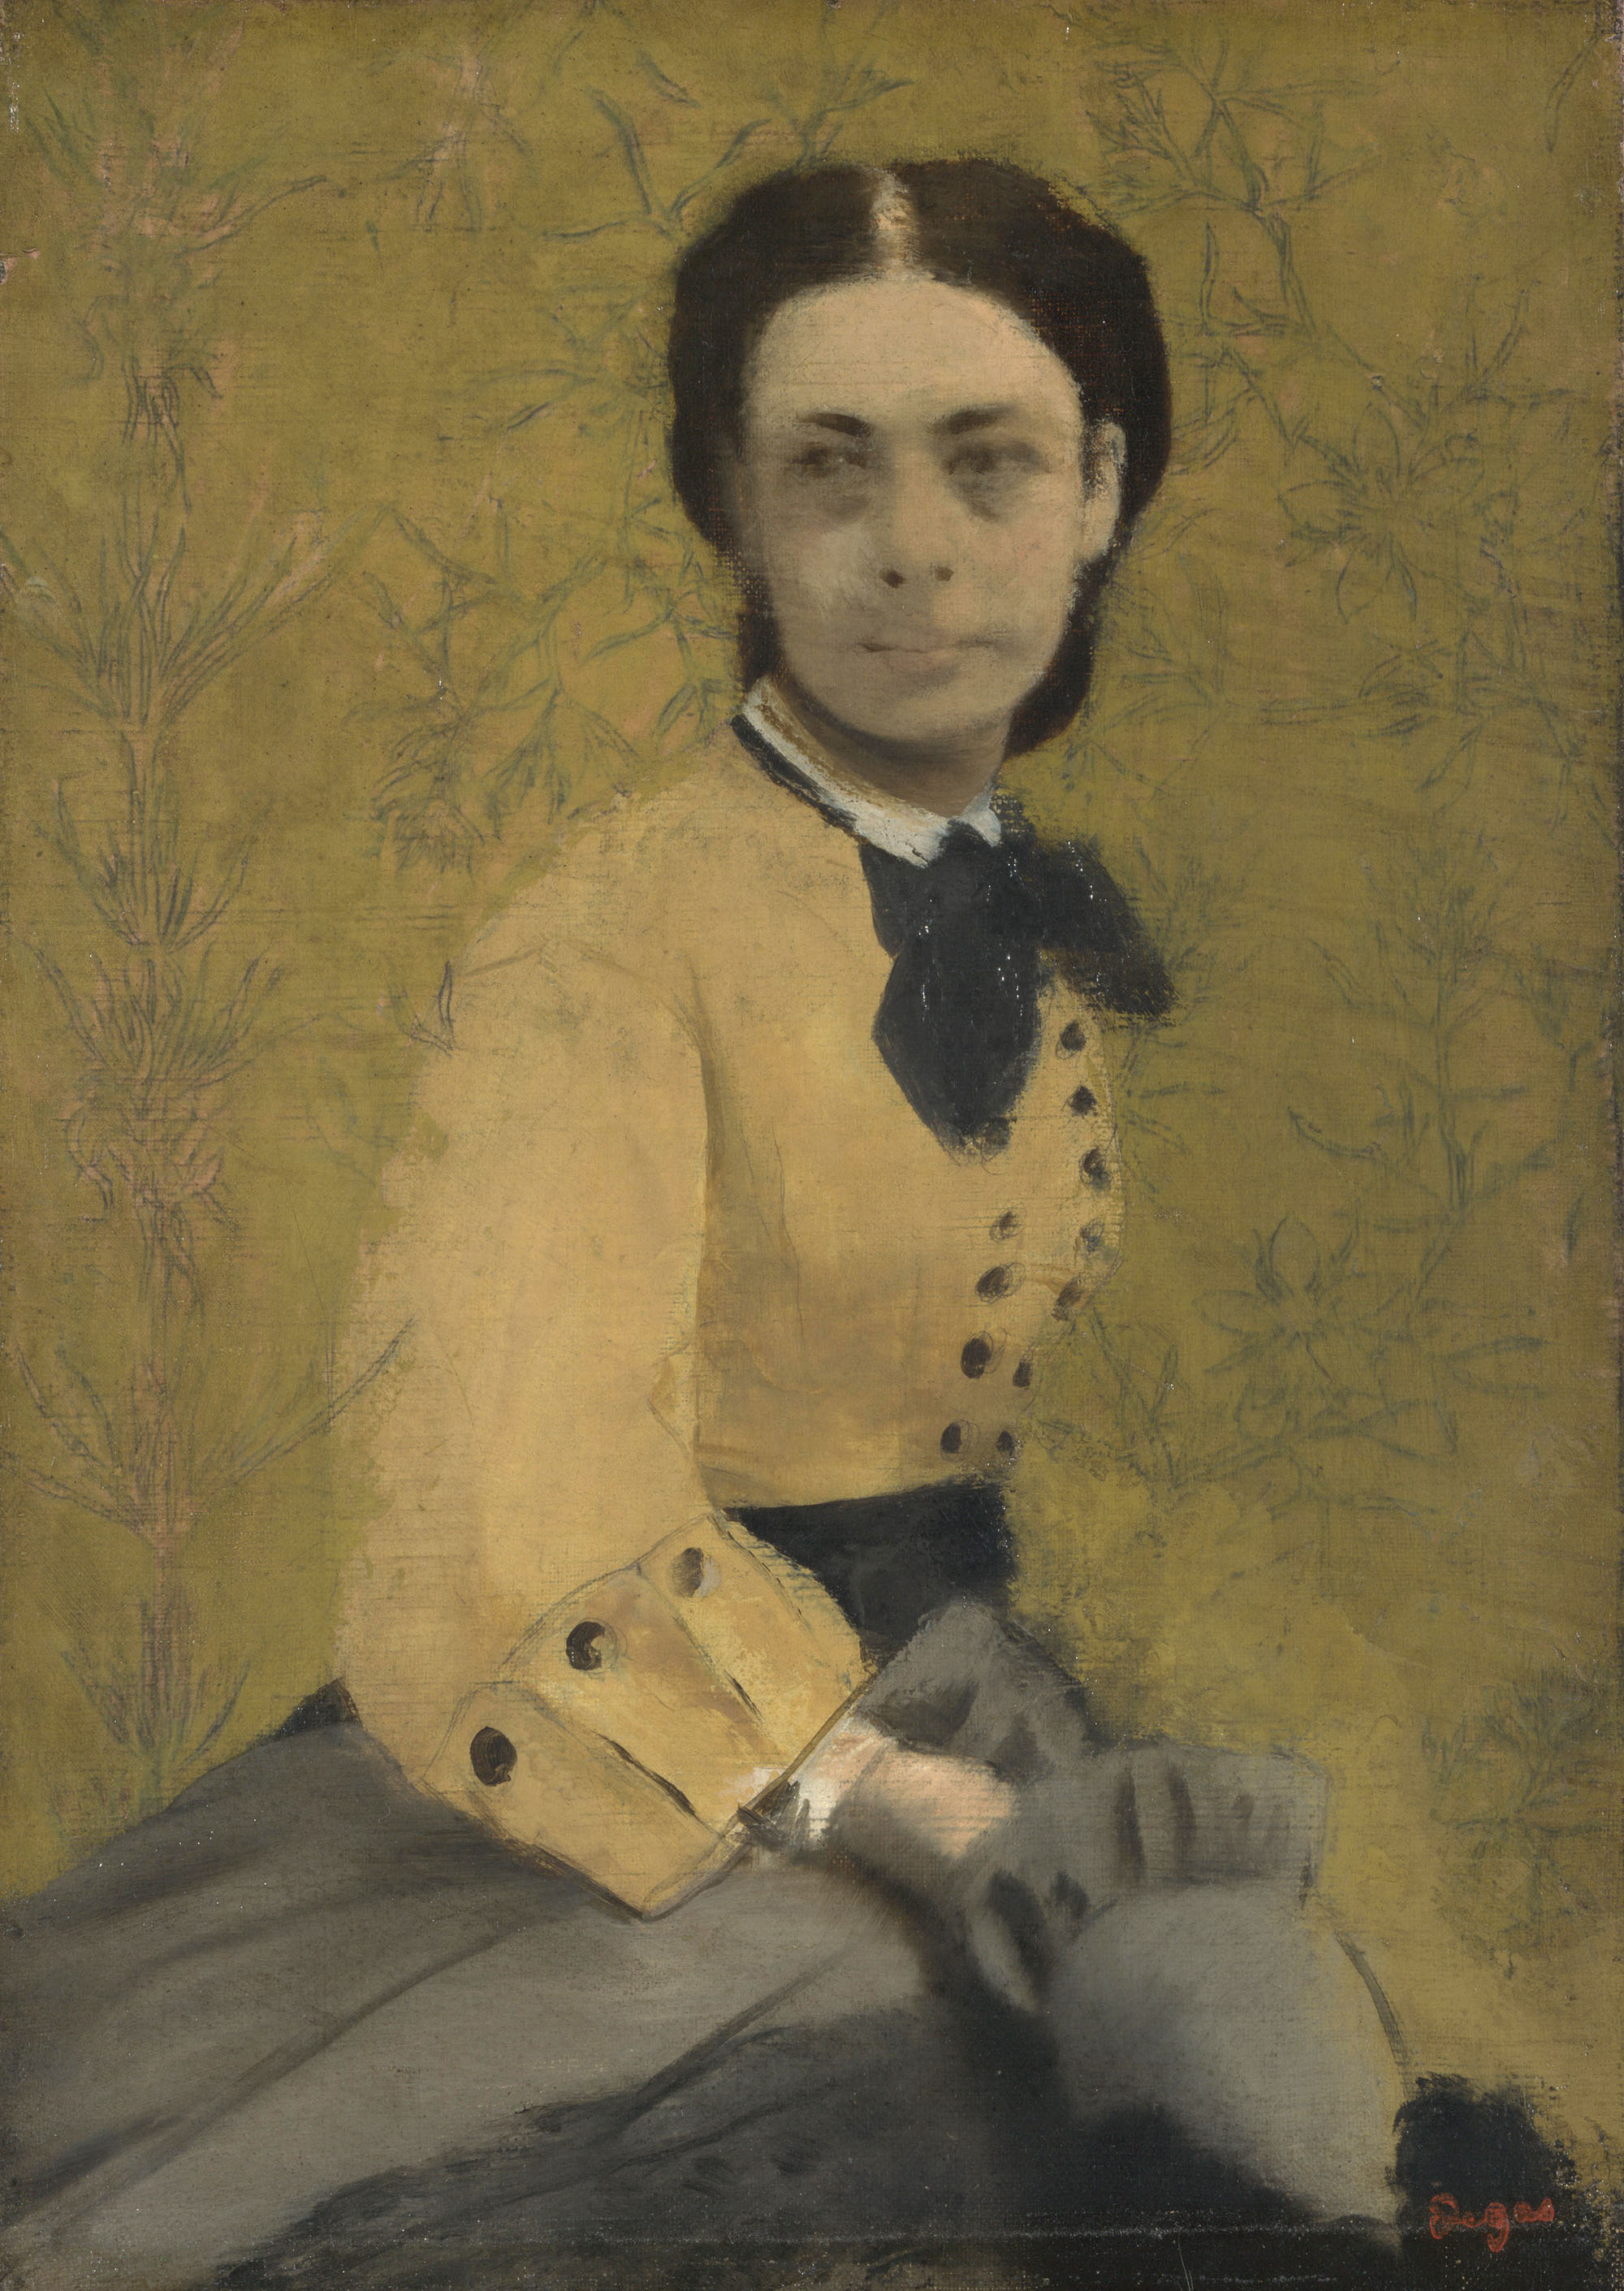 Эдгар Дега. "Портрет княгини Паулины де Меттерних". Около 1865.